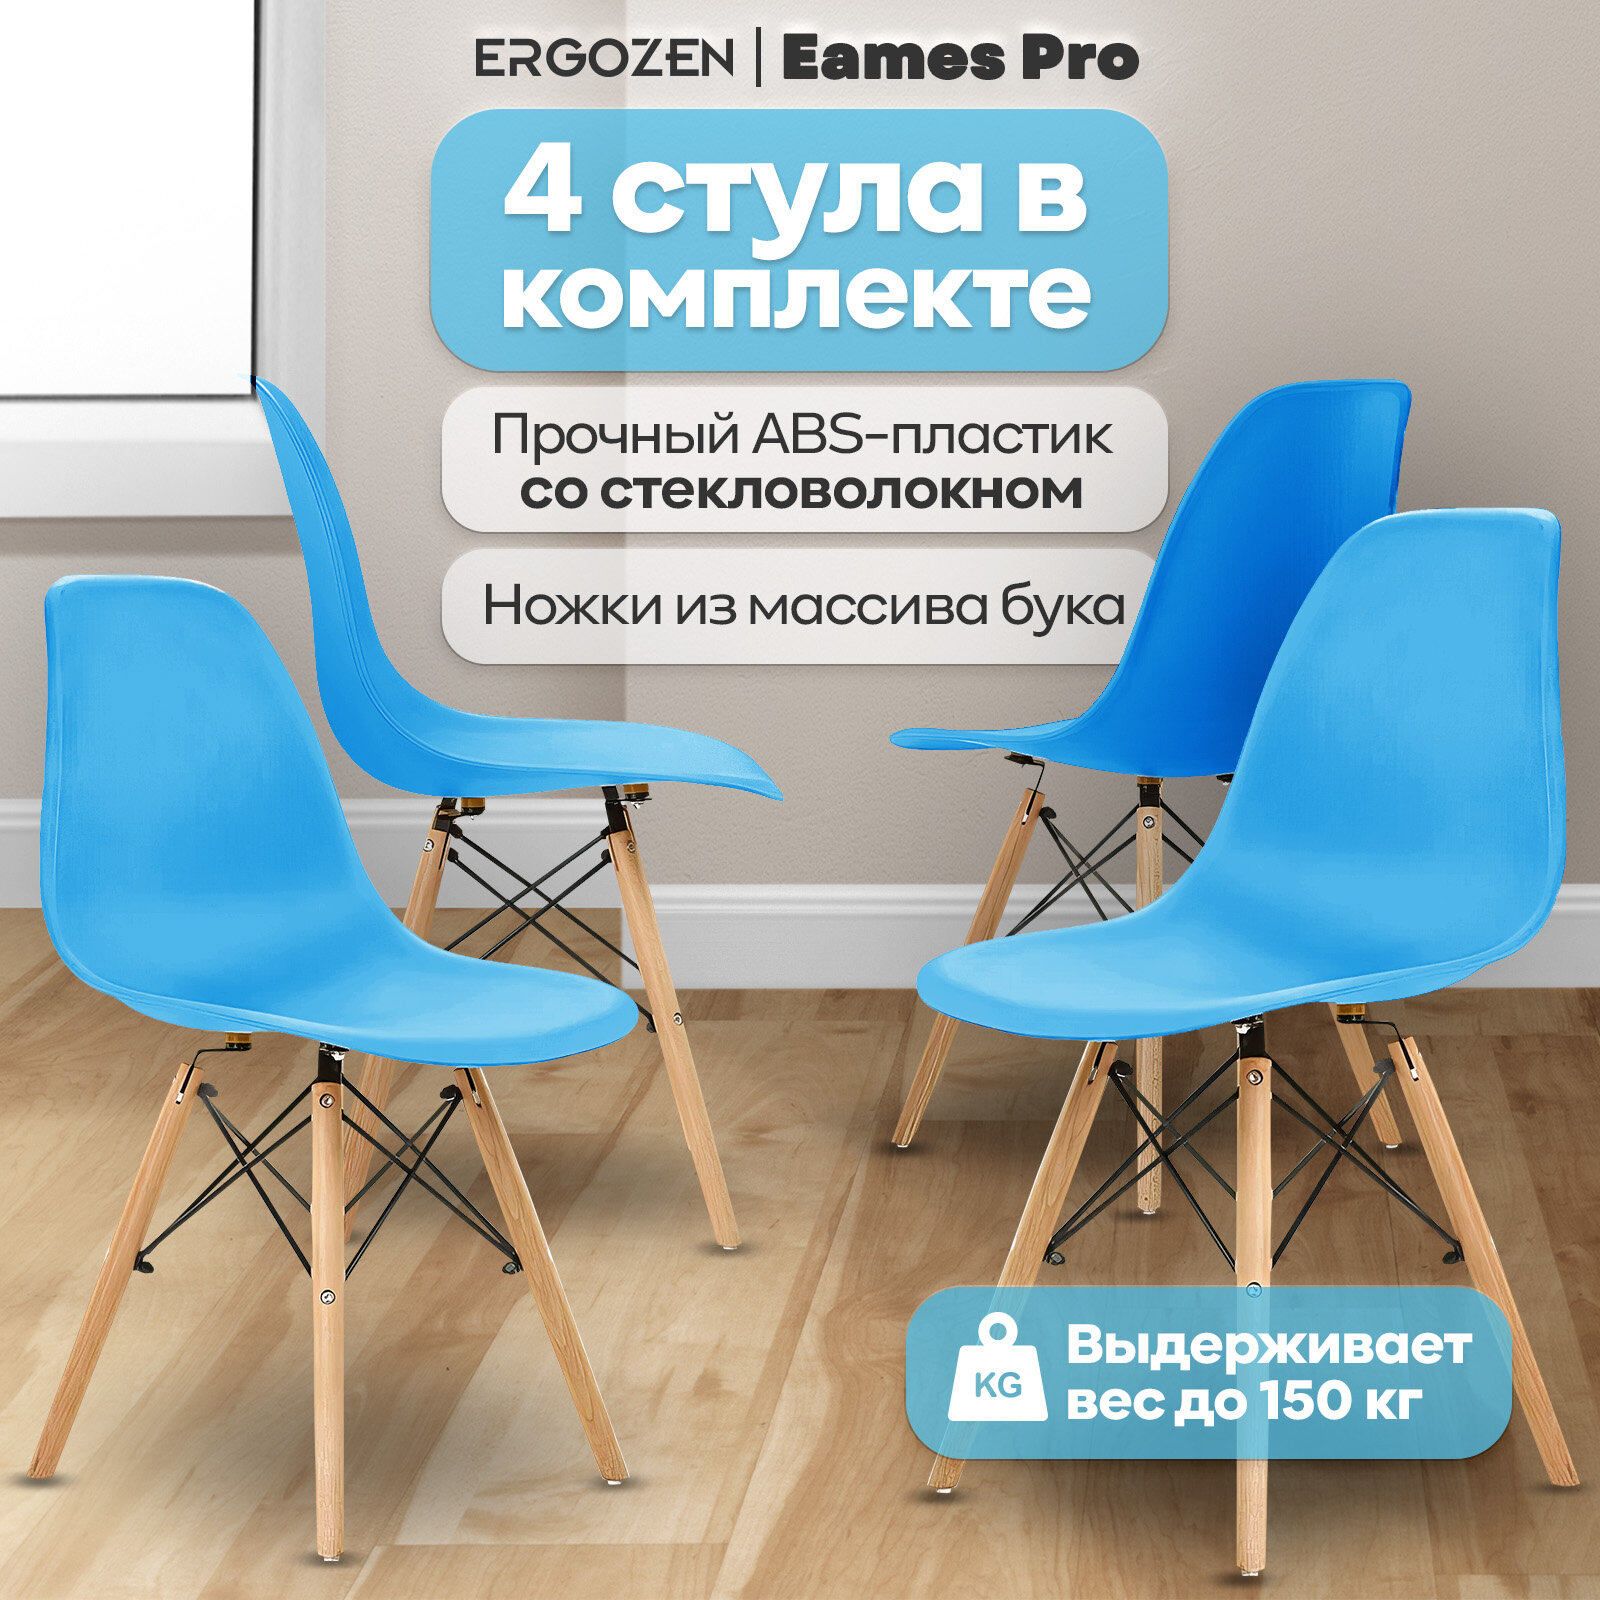 Кухонные стулья Ergozen Eames DSW Pro 4 шт комплект, голубой